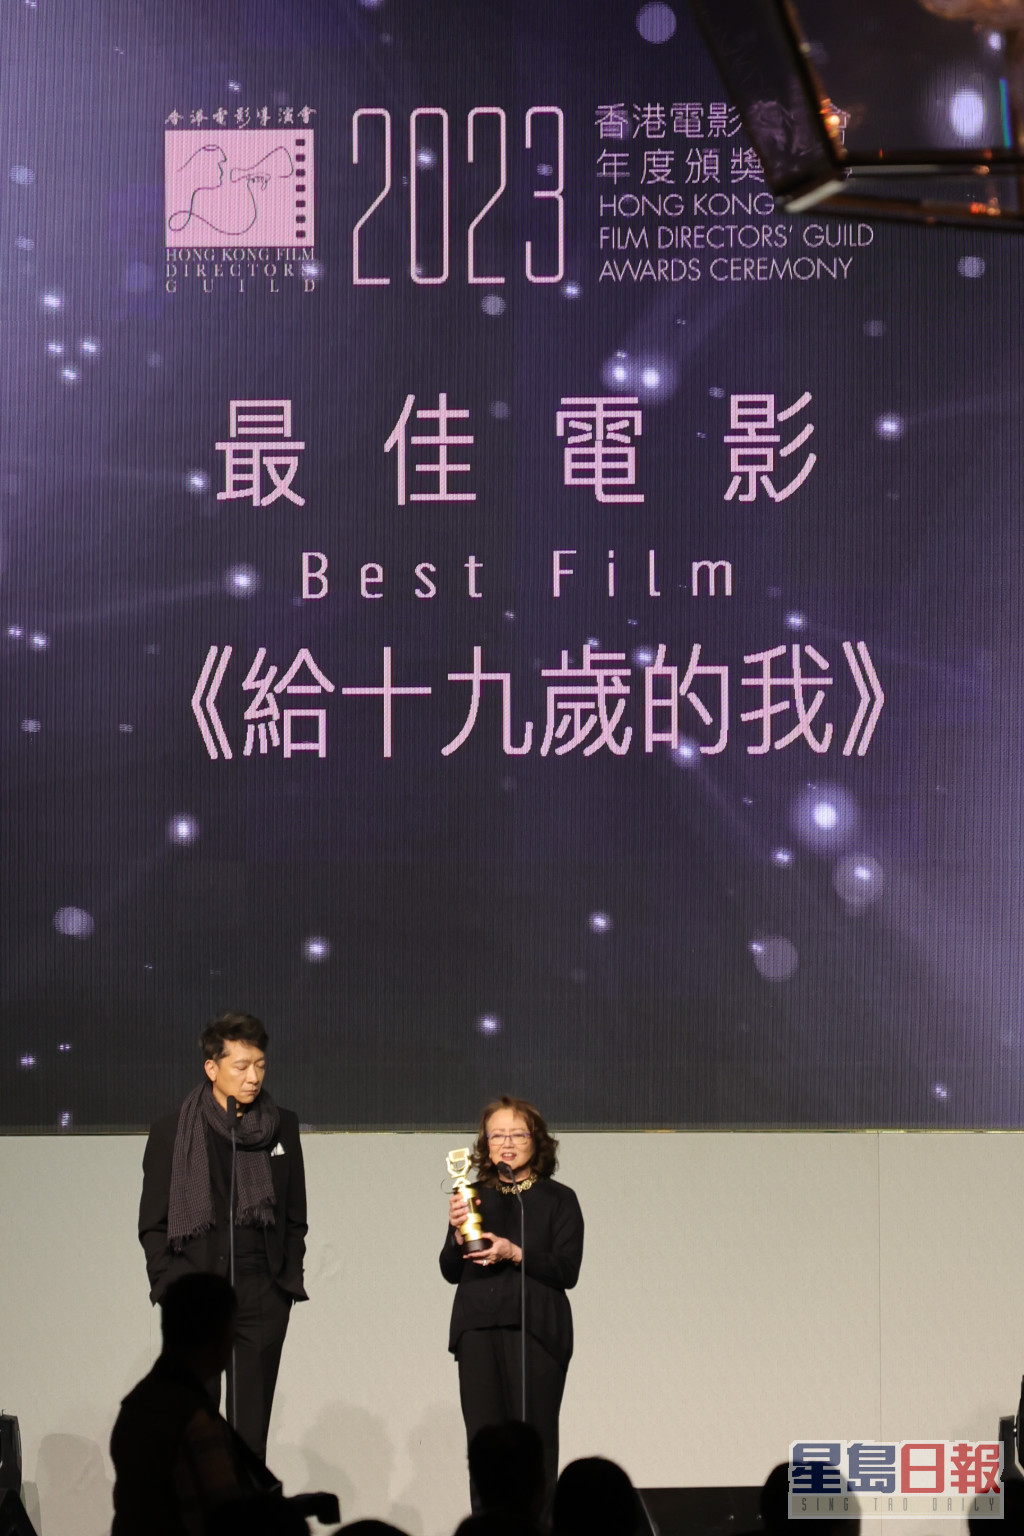 监制黄慧和导演之一郭伟伦上台领奖，未有接受传媒访问。